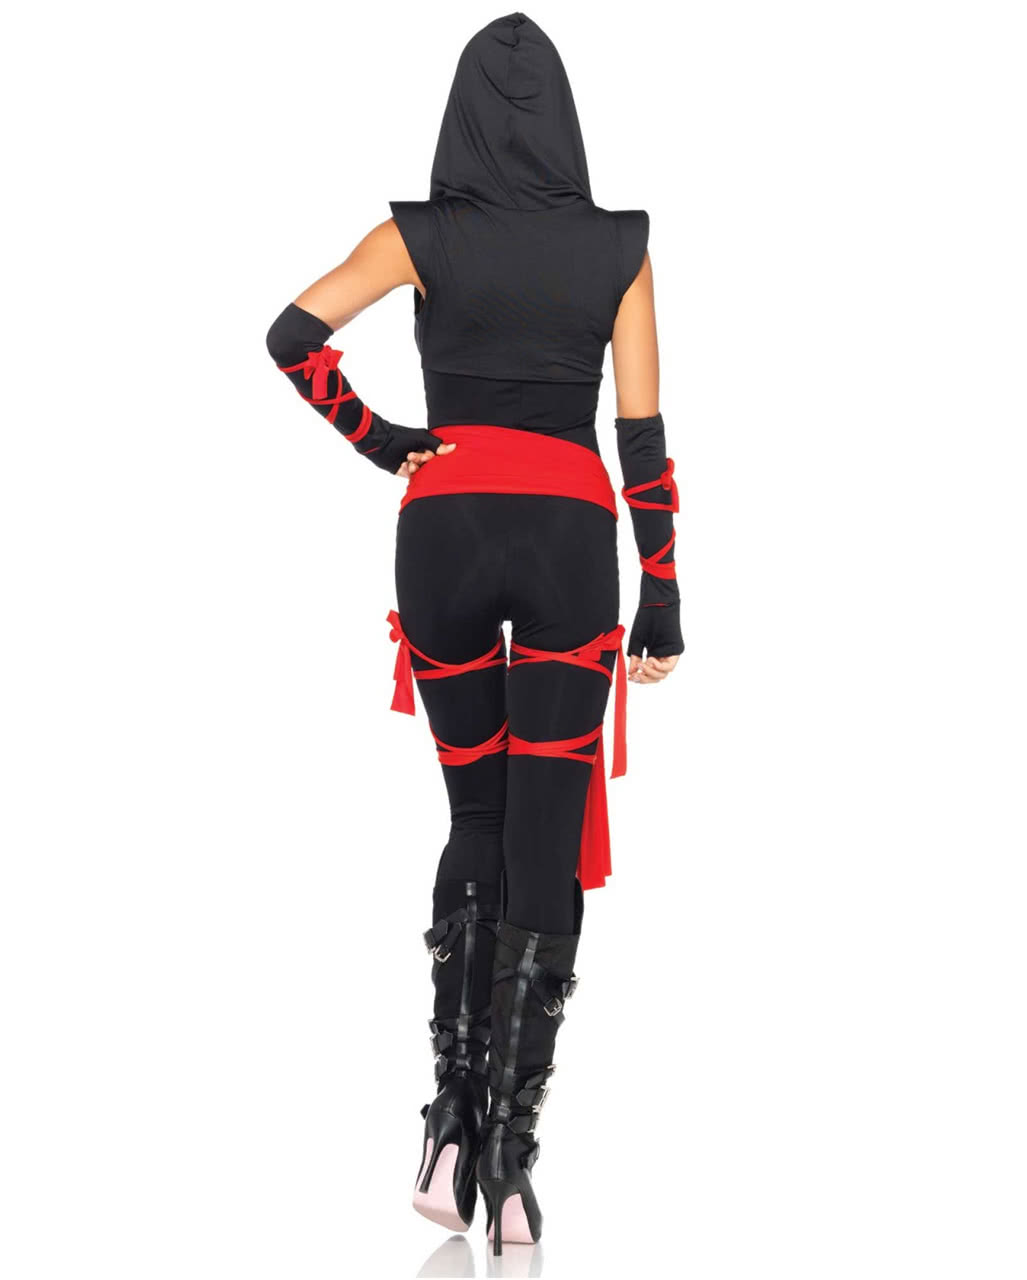 Sexy Ninja Kostum Fur Damen Deluxe Online Bestellen Karneval Universe